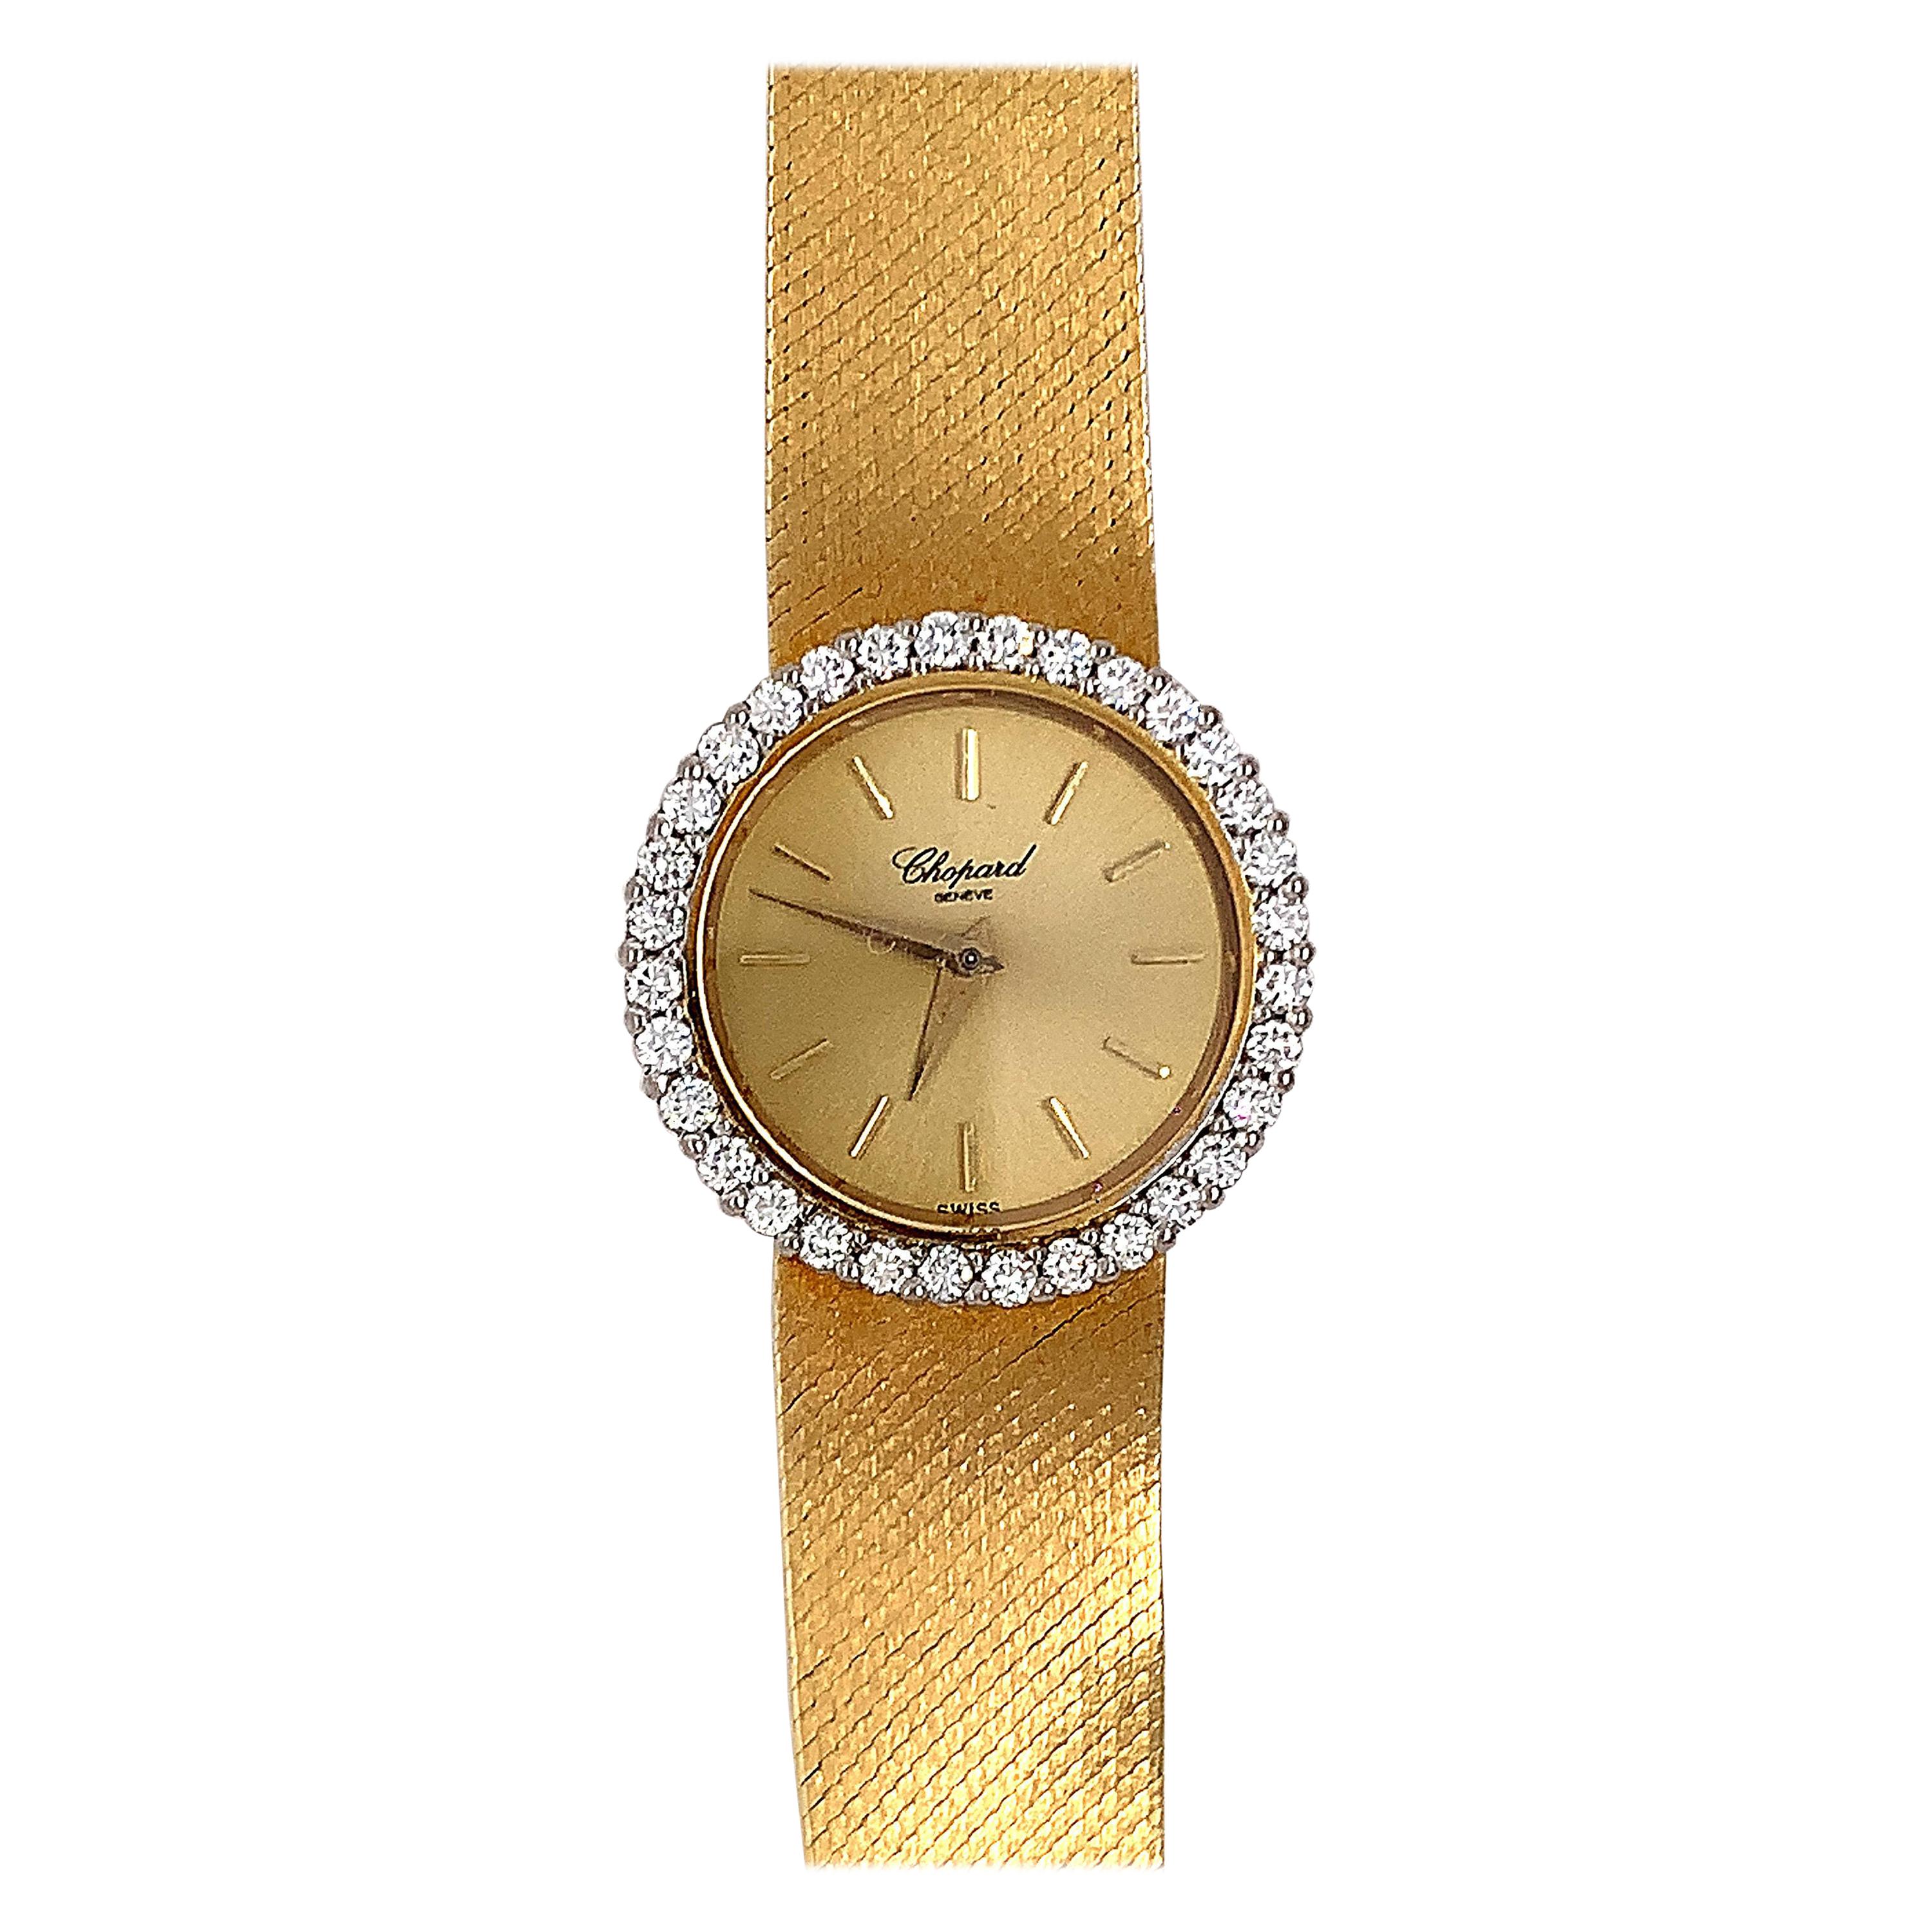 Chopard Diamond Lady's Watch